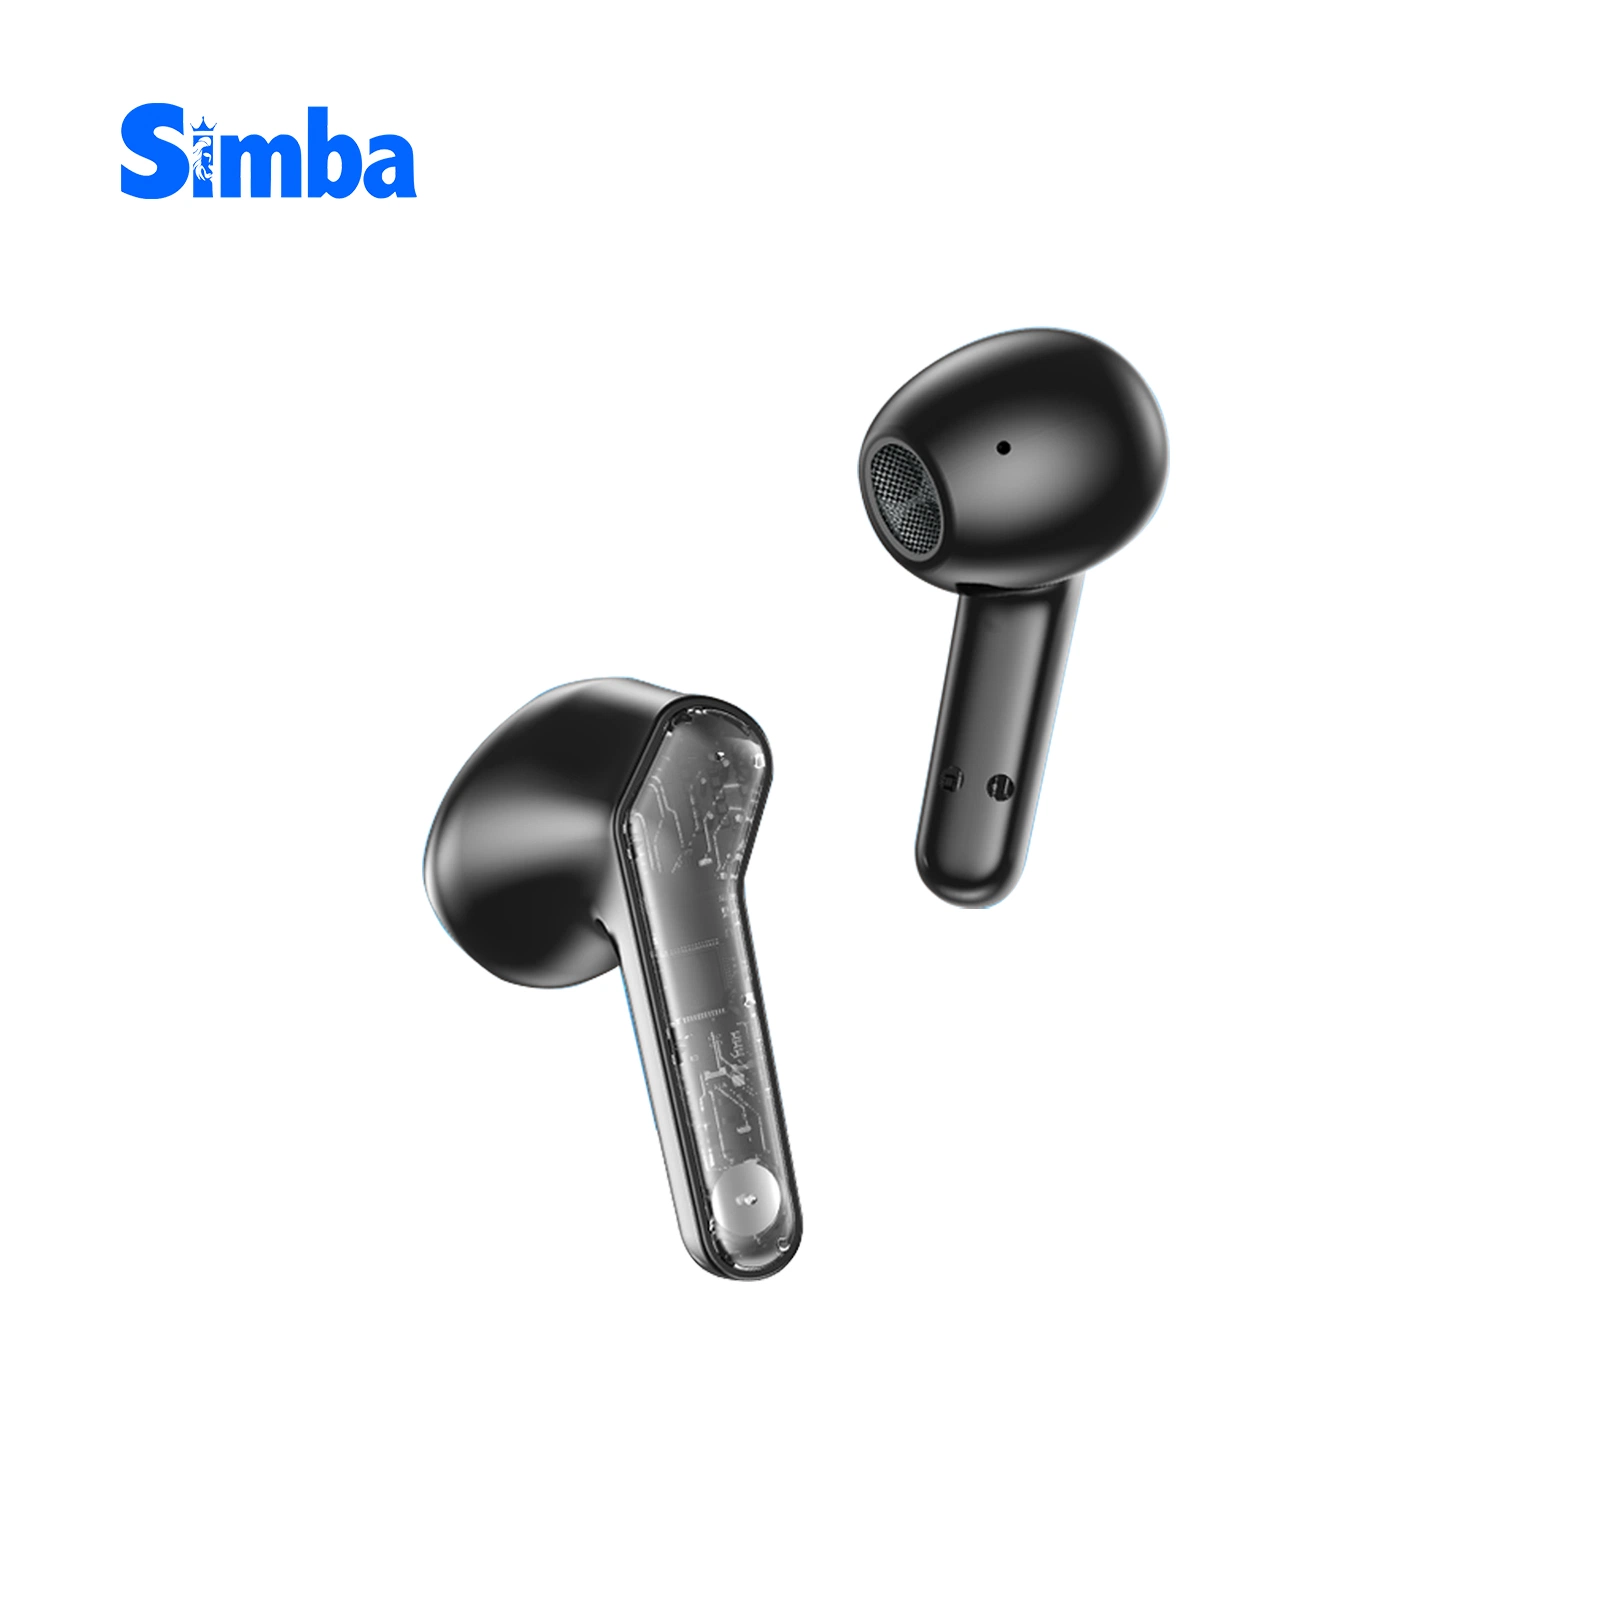 سماعات رأس داخل الأذن جديدة مزودة بتقنية TWS مزودة بخاصية Bluetooth® لتشغيل الألعاب داخل الأذن